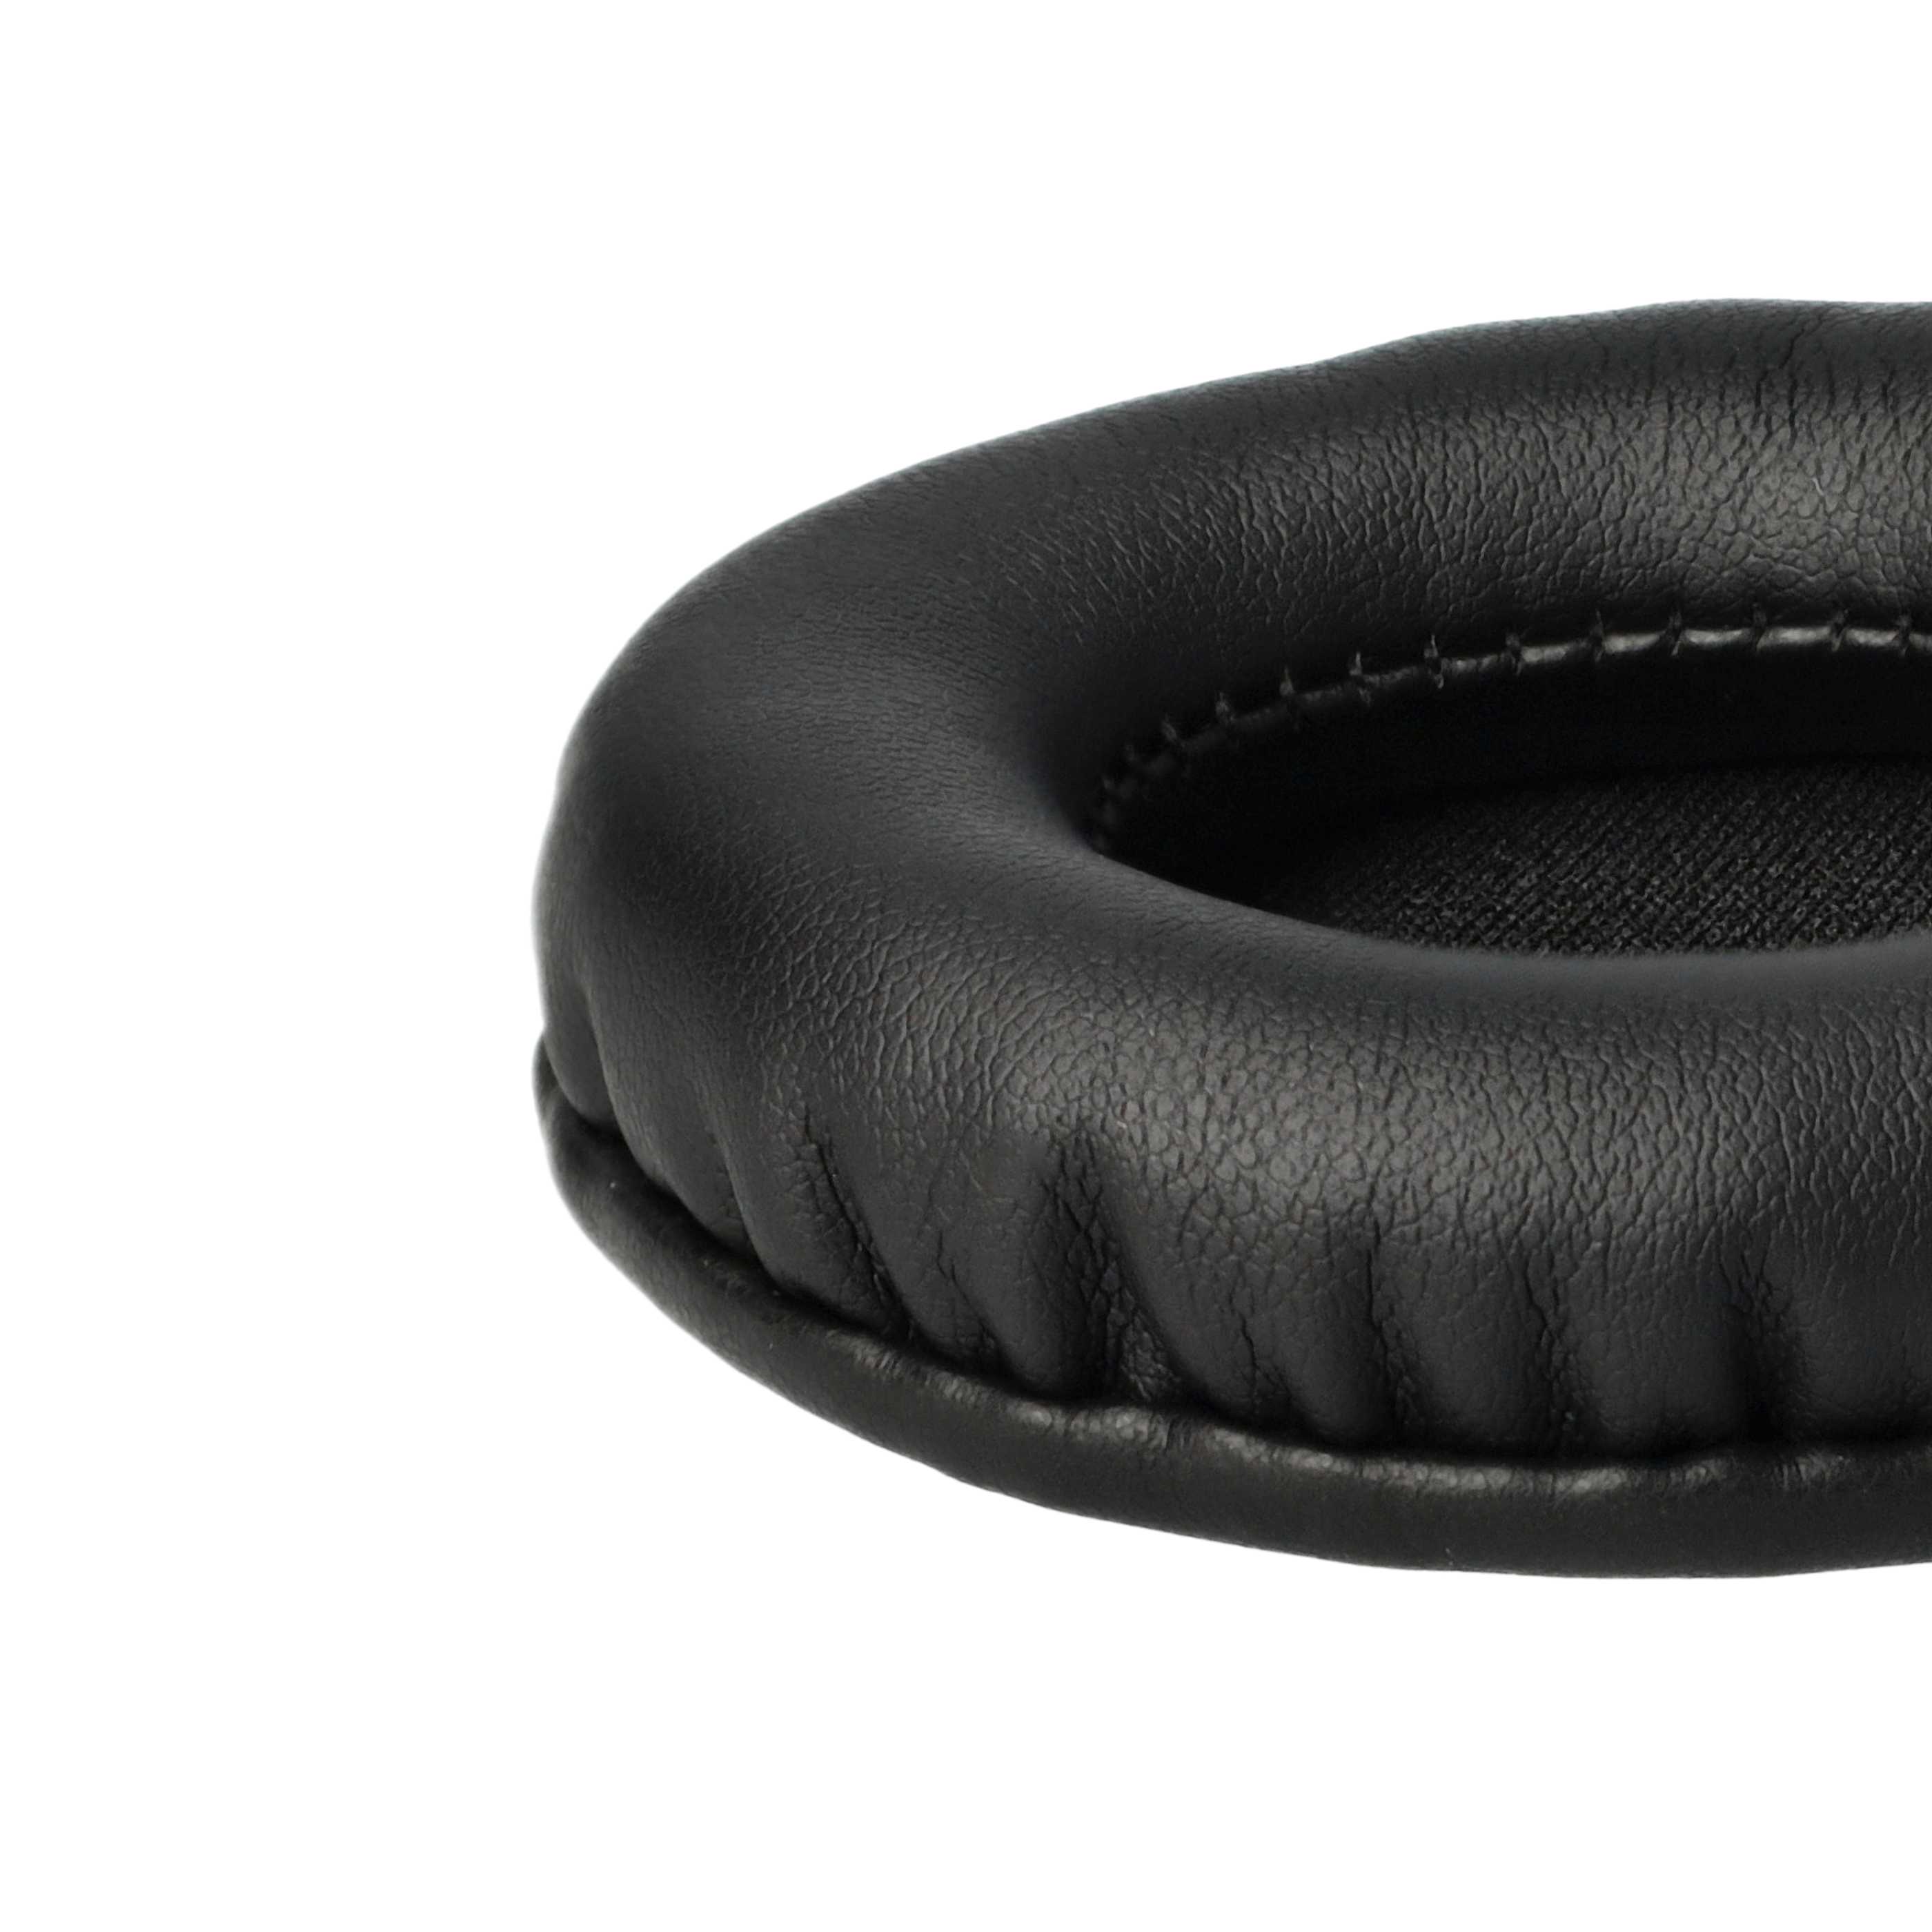 2x Poduszki do słuchawek słuchawek z nausznikami 65 mm / t.Bone HD 660 - pady śr. 6,5 cm , czarny